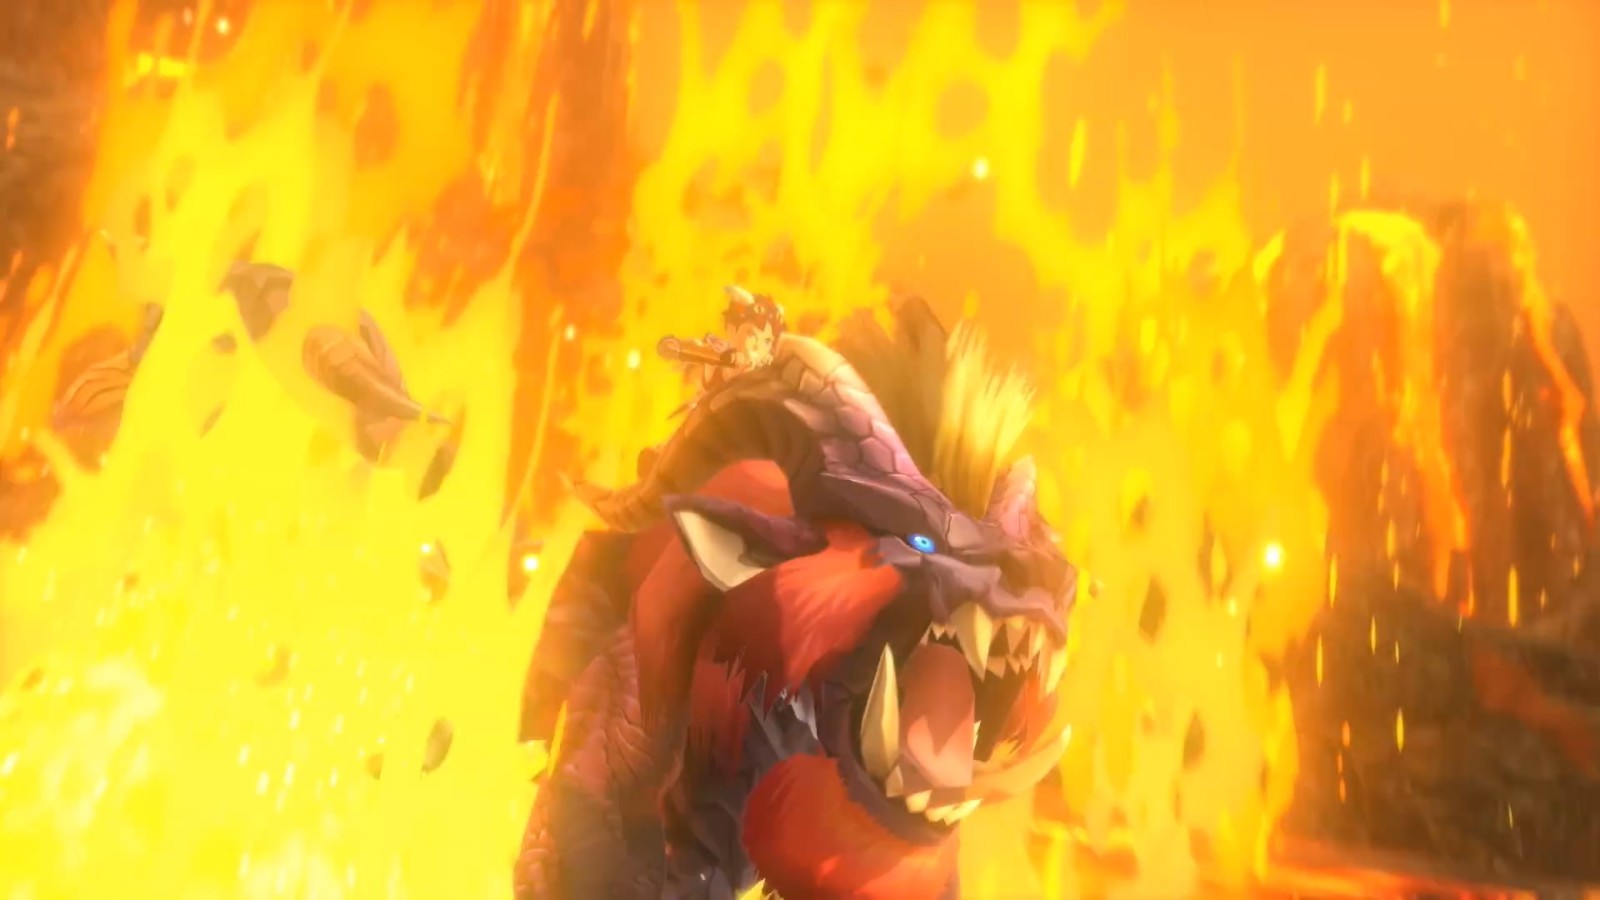 《怪物猎人物语2：毁灭之翼》特别节目 宣传片和实机演示等